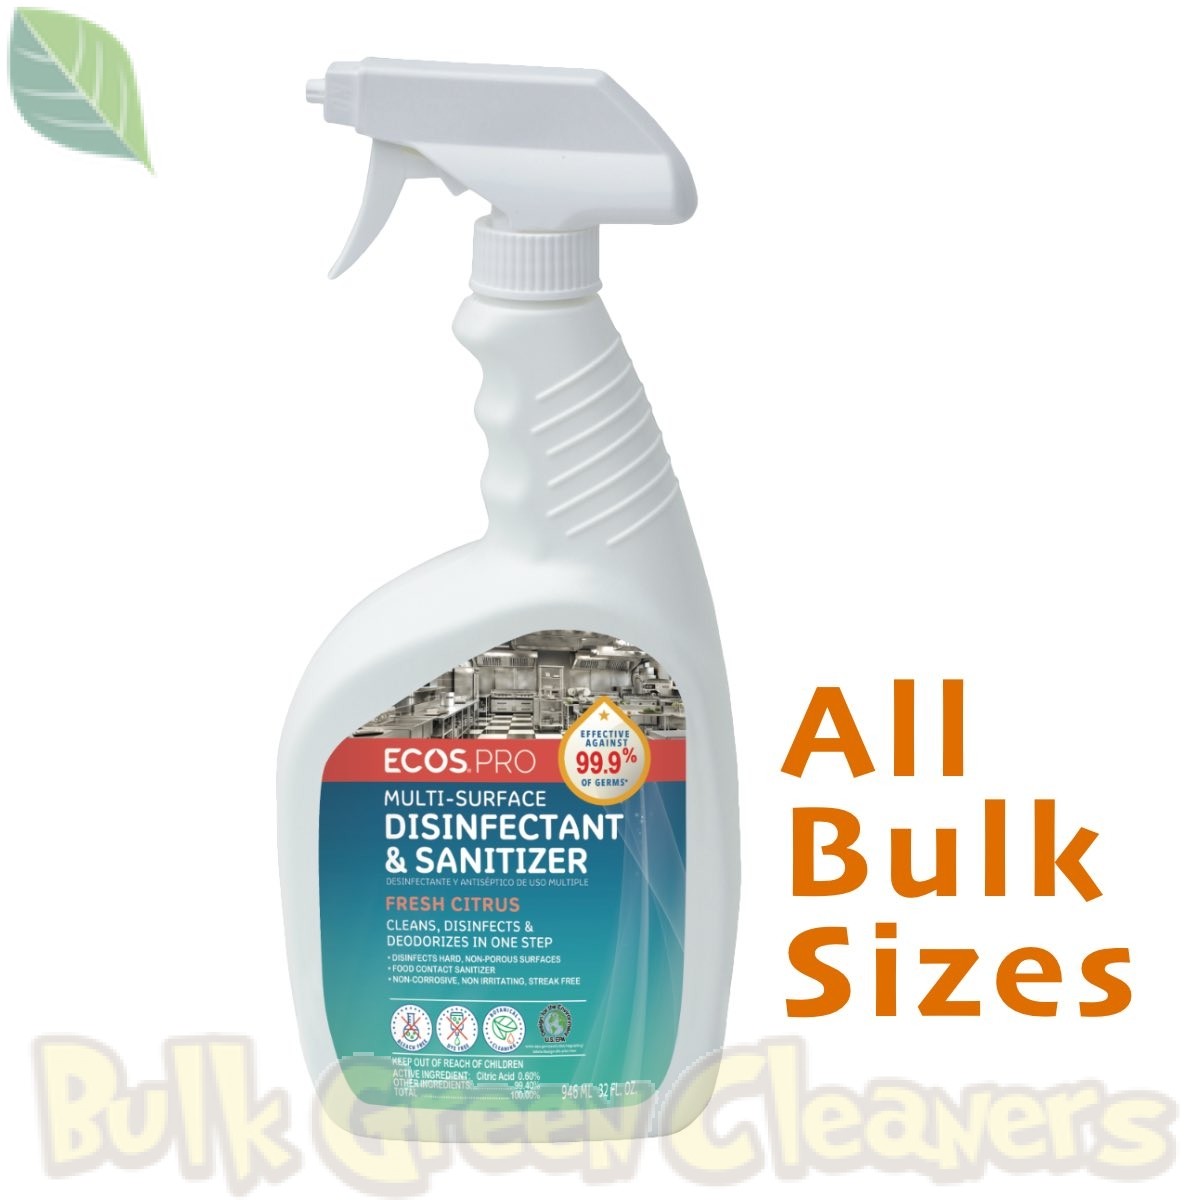 https://bulkgreencleaners.com/media/catalog/product/cache/1/image/1200x1200/7f3f3d13ad4faf8327b7df5de1f99c6f/e/c/ecos_pro_disinfectant_sanitizer_all_bulk-sizes.jpg